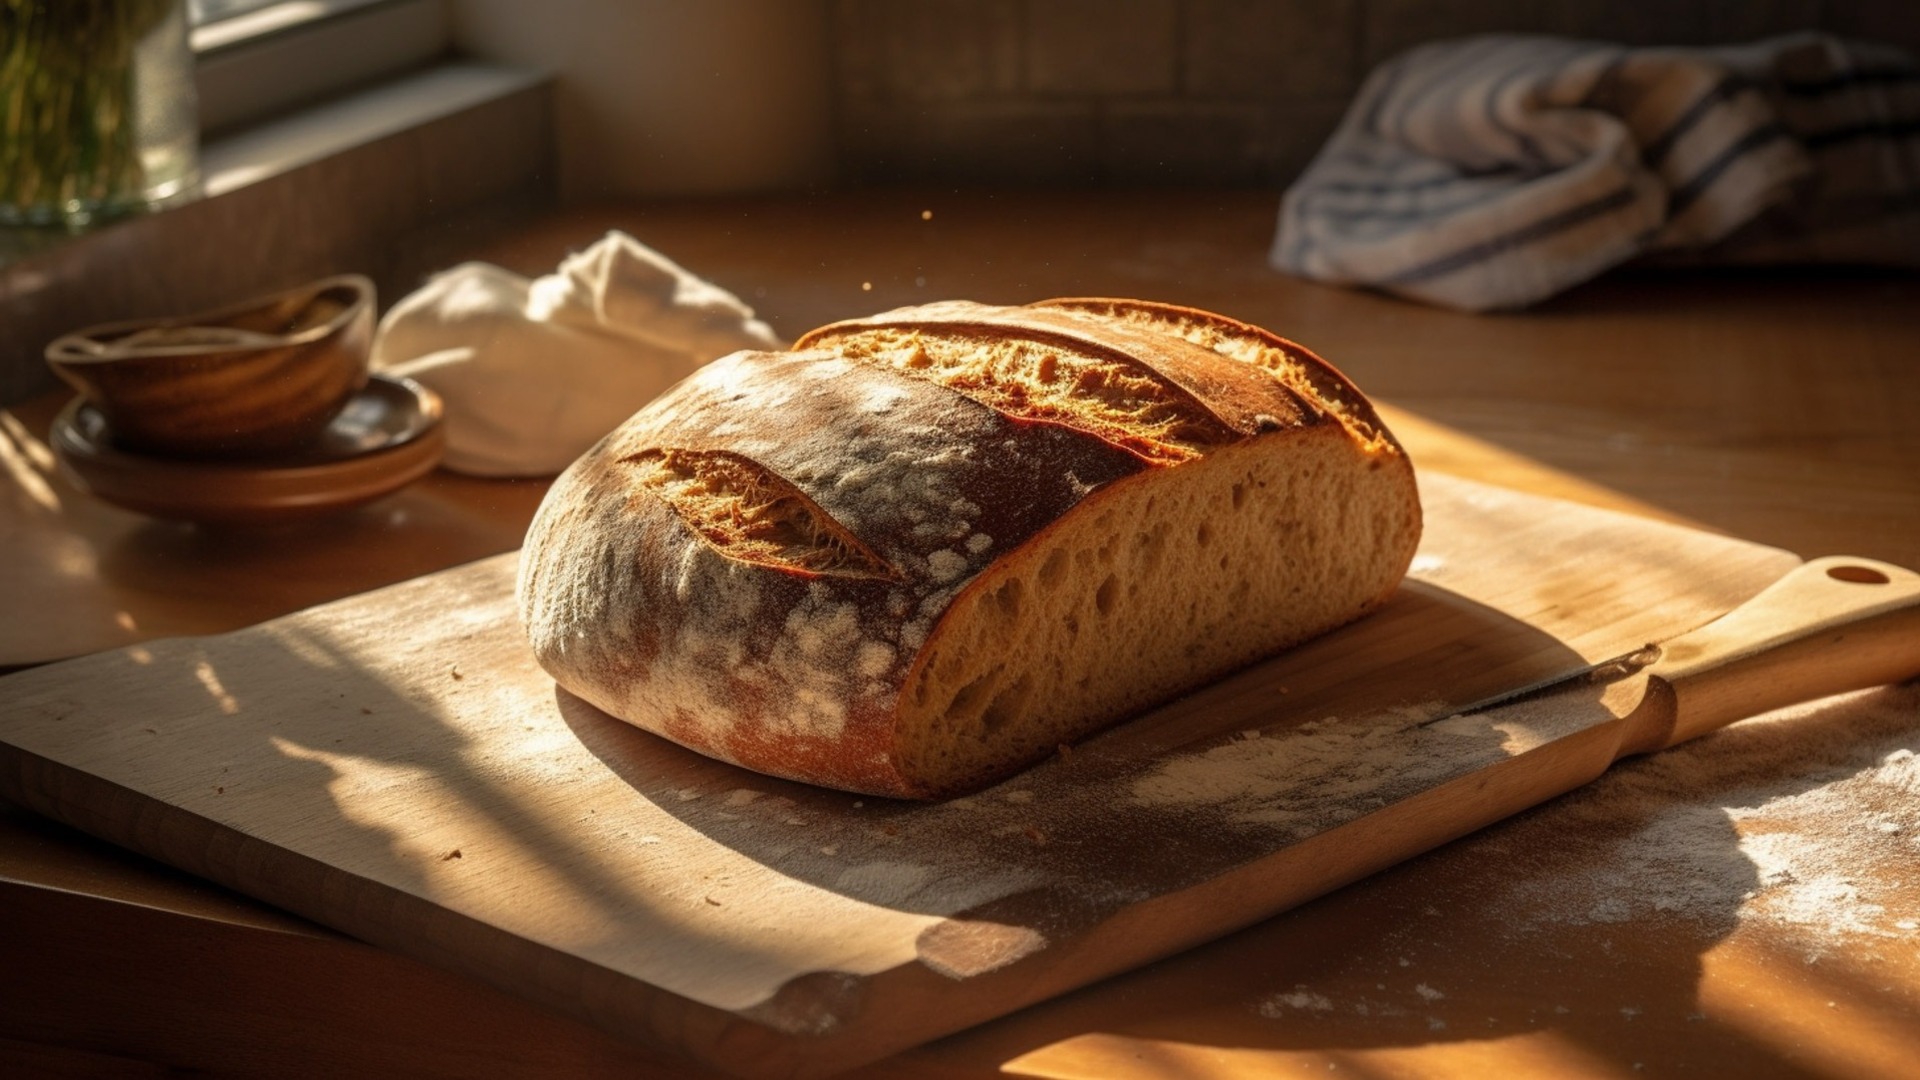 Технологи: Хлеб может храниться дольше при соблюдении ряда правил